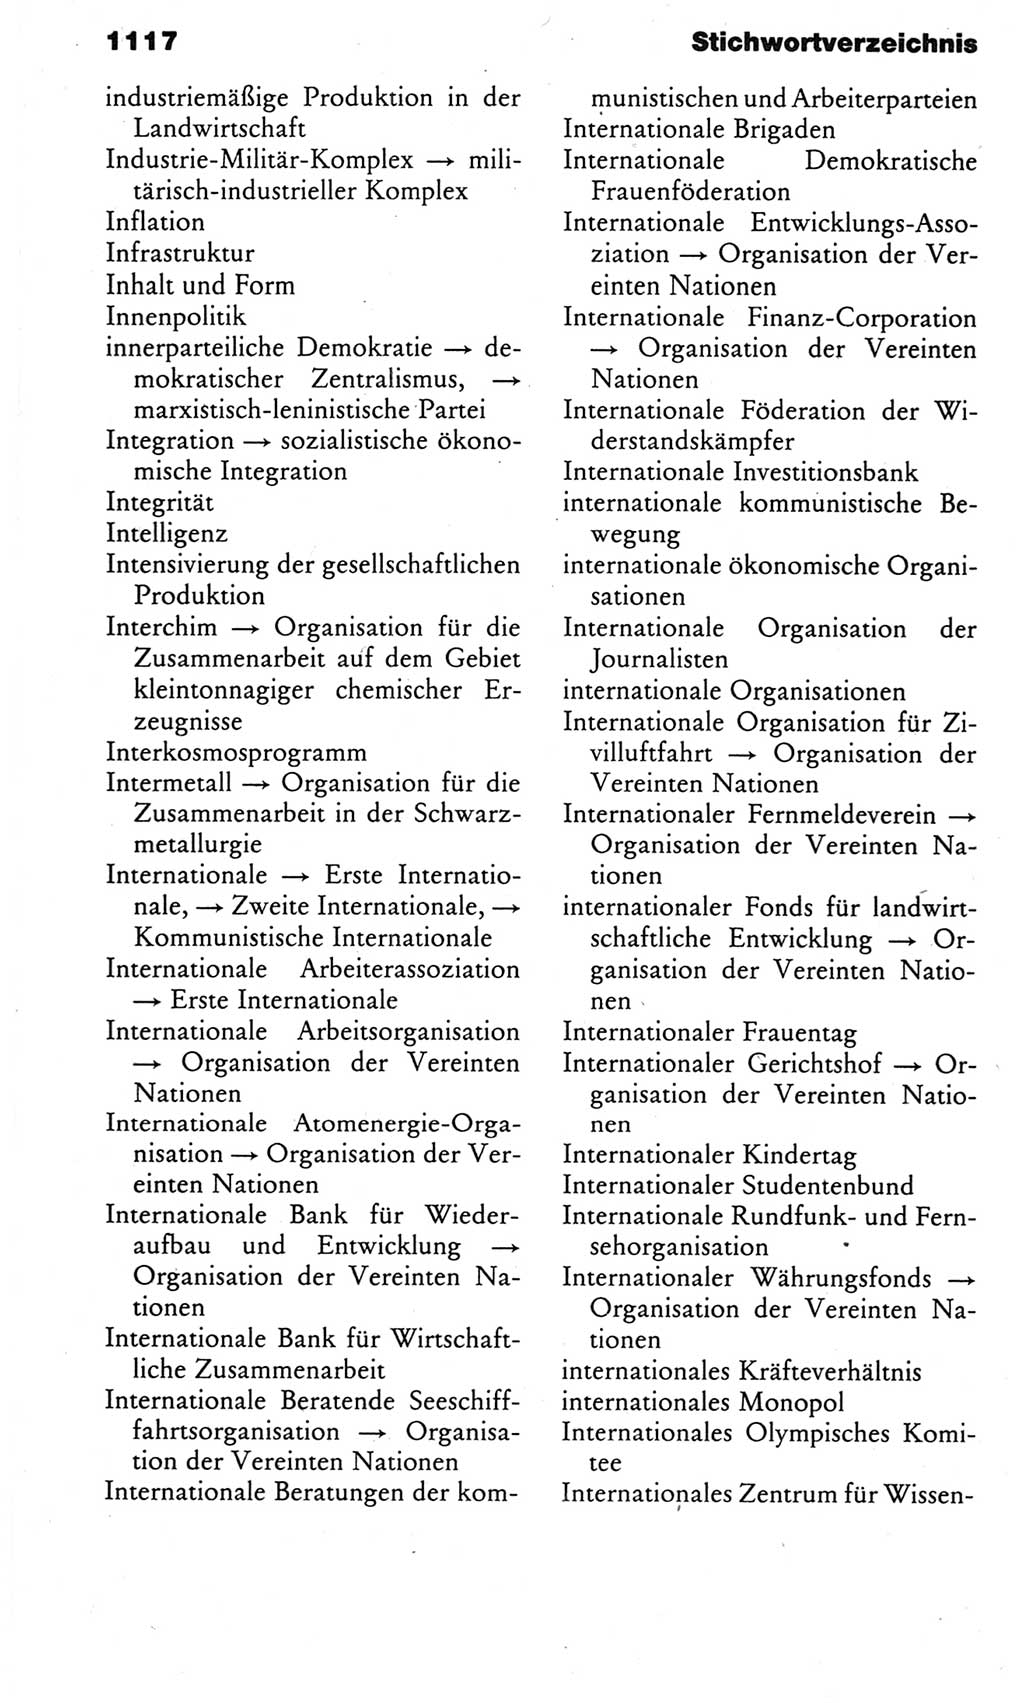 Kleines politisches Wörterbuch [Deutsche Demokratische Republik (DDR)] 1983, Seite 1117 (Kl. pol. Wb. DDR 1983, S. 1117)